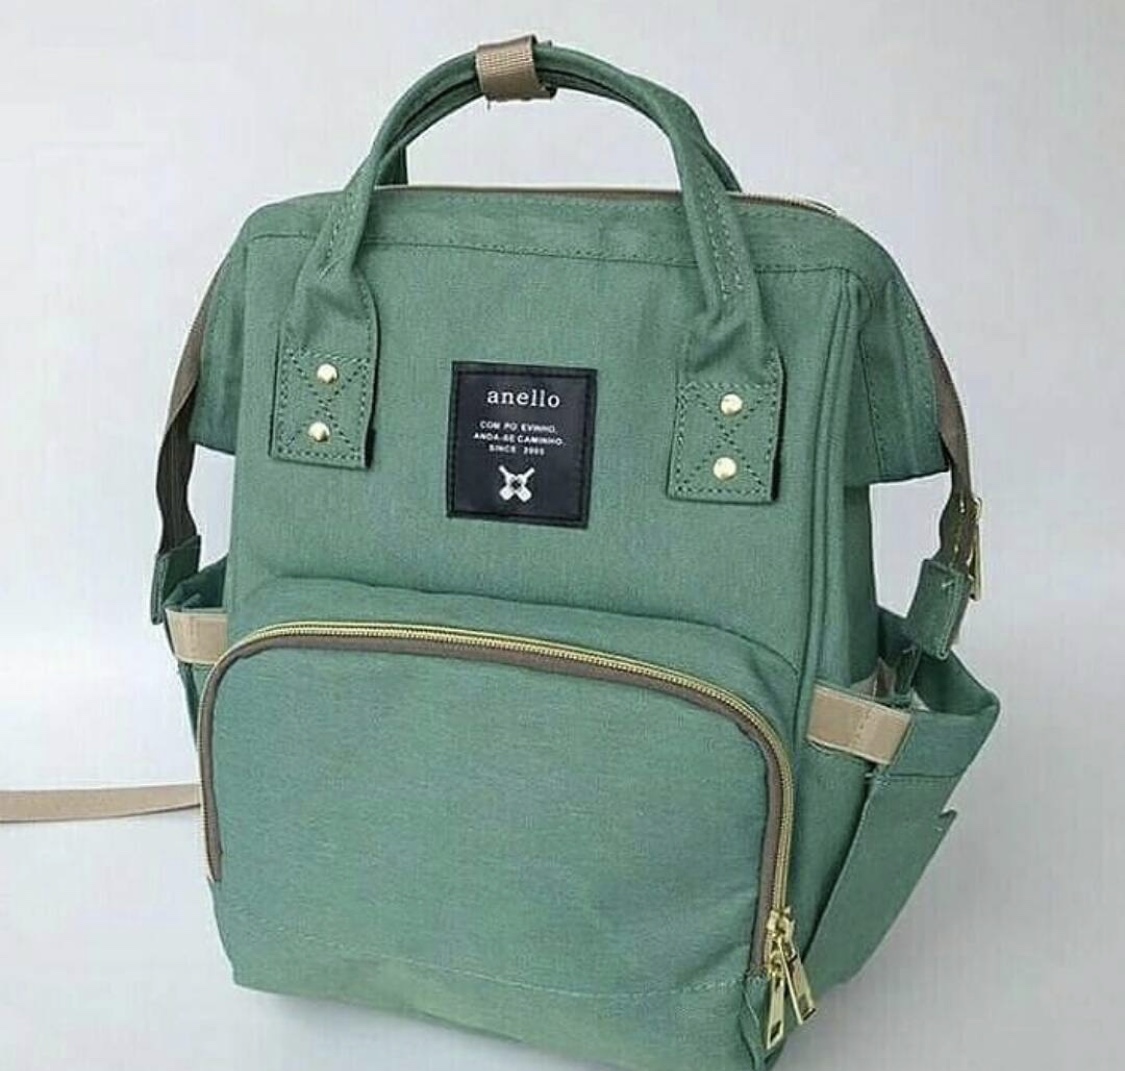 Anello Diaper Bag - Green